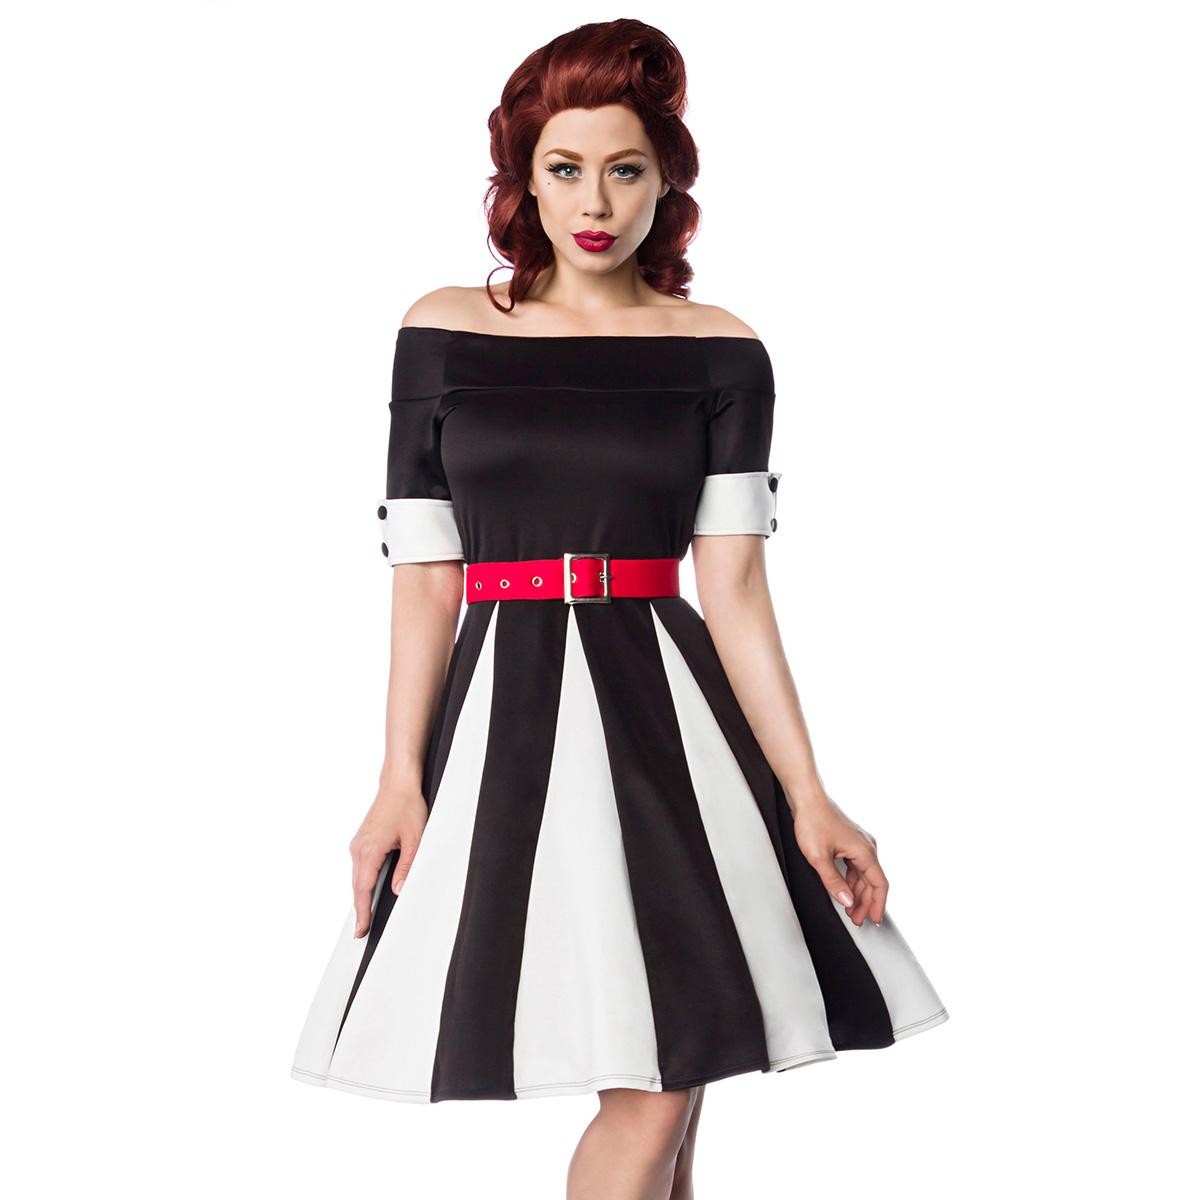  50er  Jahre  Pin  Up  Vintage  Rockabilly  Kleid  Belsira  -  Godet-Kleid  -  schwarz/weiß/rot 